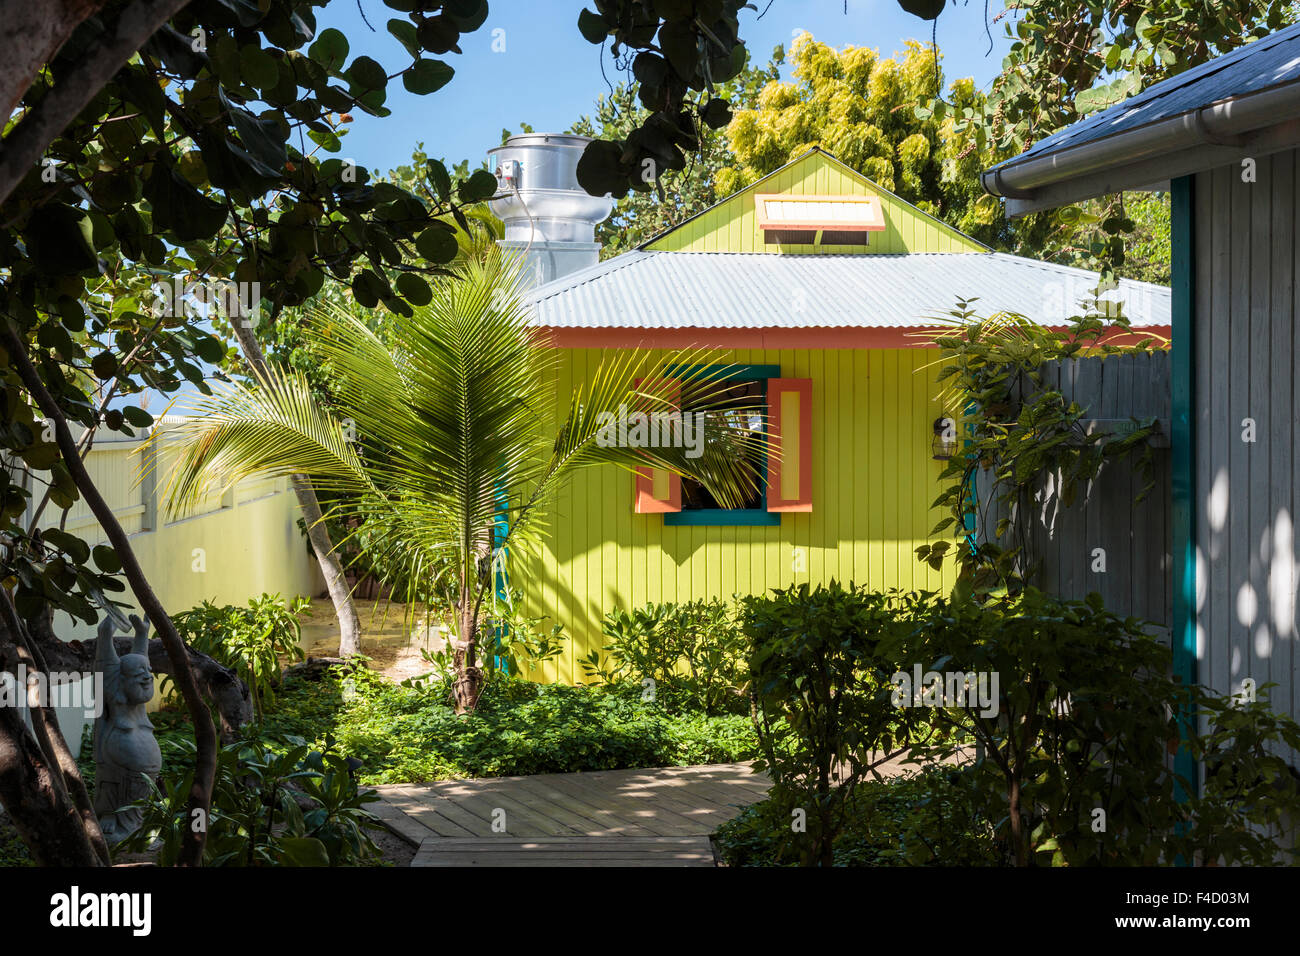 Karibik, Anguilla. Bunte hölzerne Struktur. Stockfoto